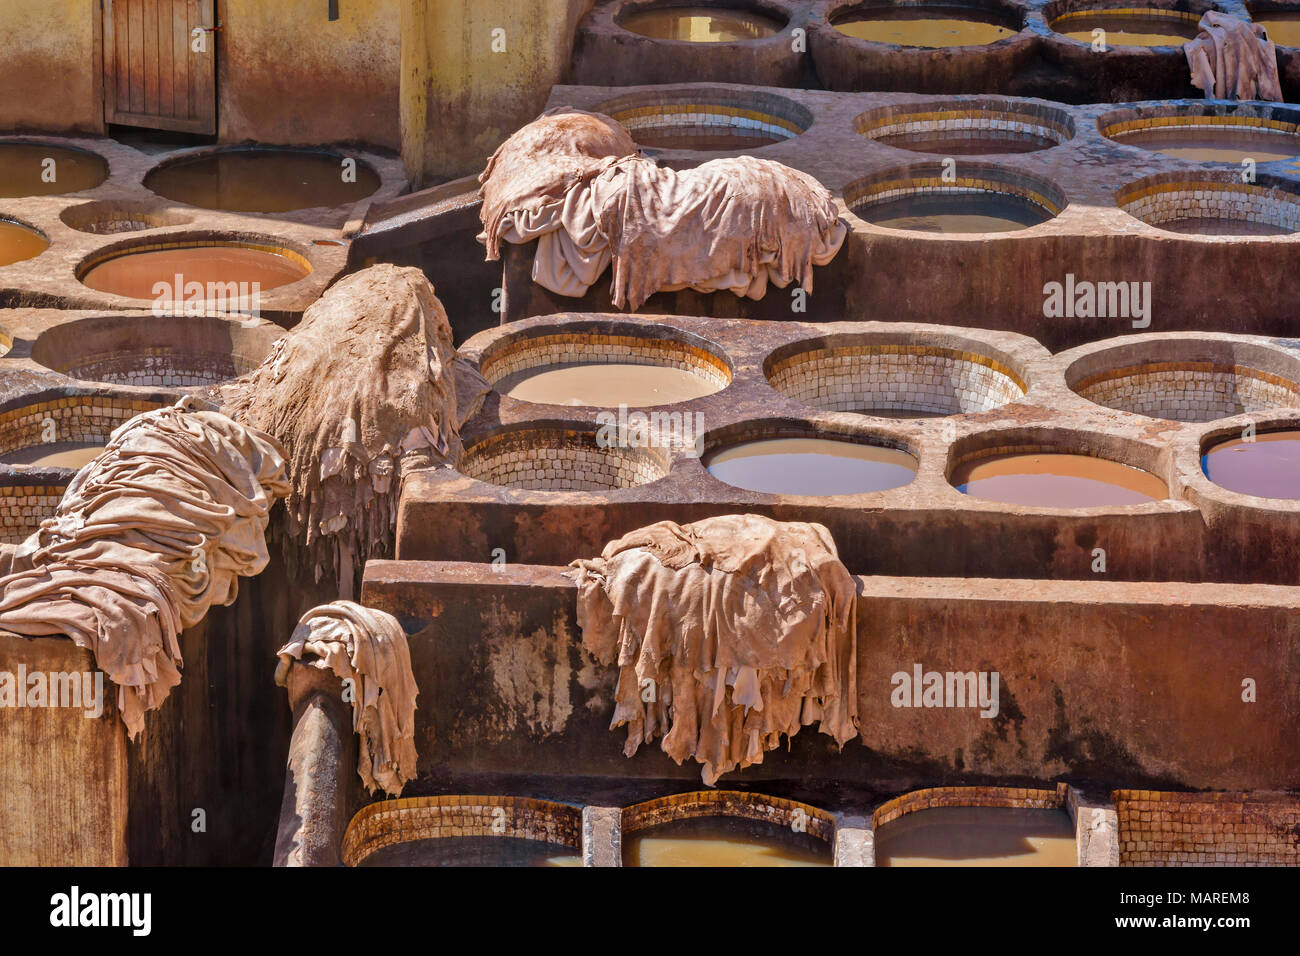 Marokko Fes Medina Souk CHOUWARA GERBEREI GERBEREIEN RUNDSCHREIBEN Fässer oder Tanks mit bunten FARBSTOFFE ENTHALTEN, DIE HÄUTE GESTAPELT SKINS ENTFERNT DIE Stockfoto